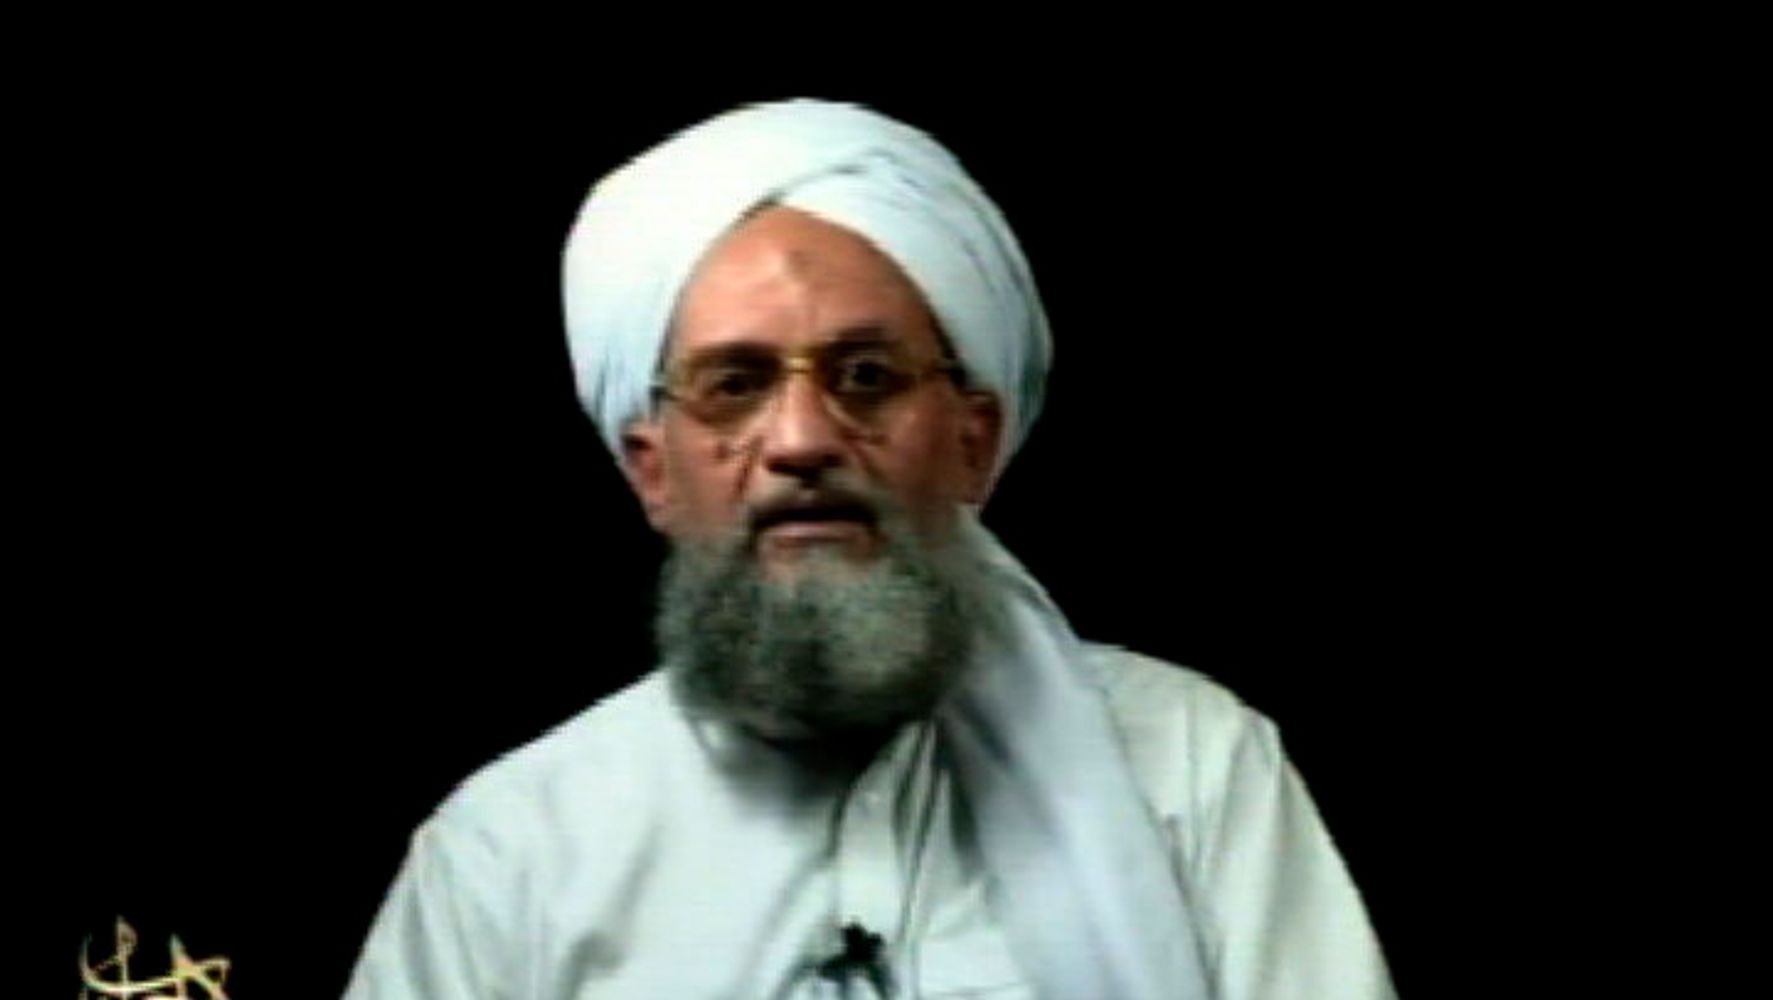 L’opération américaine a tué le chef d’Al-Qaïda Ayman al-Zawahri : rapport